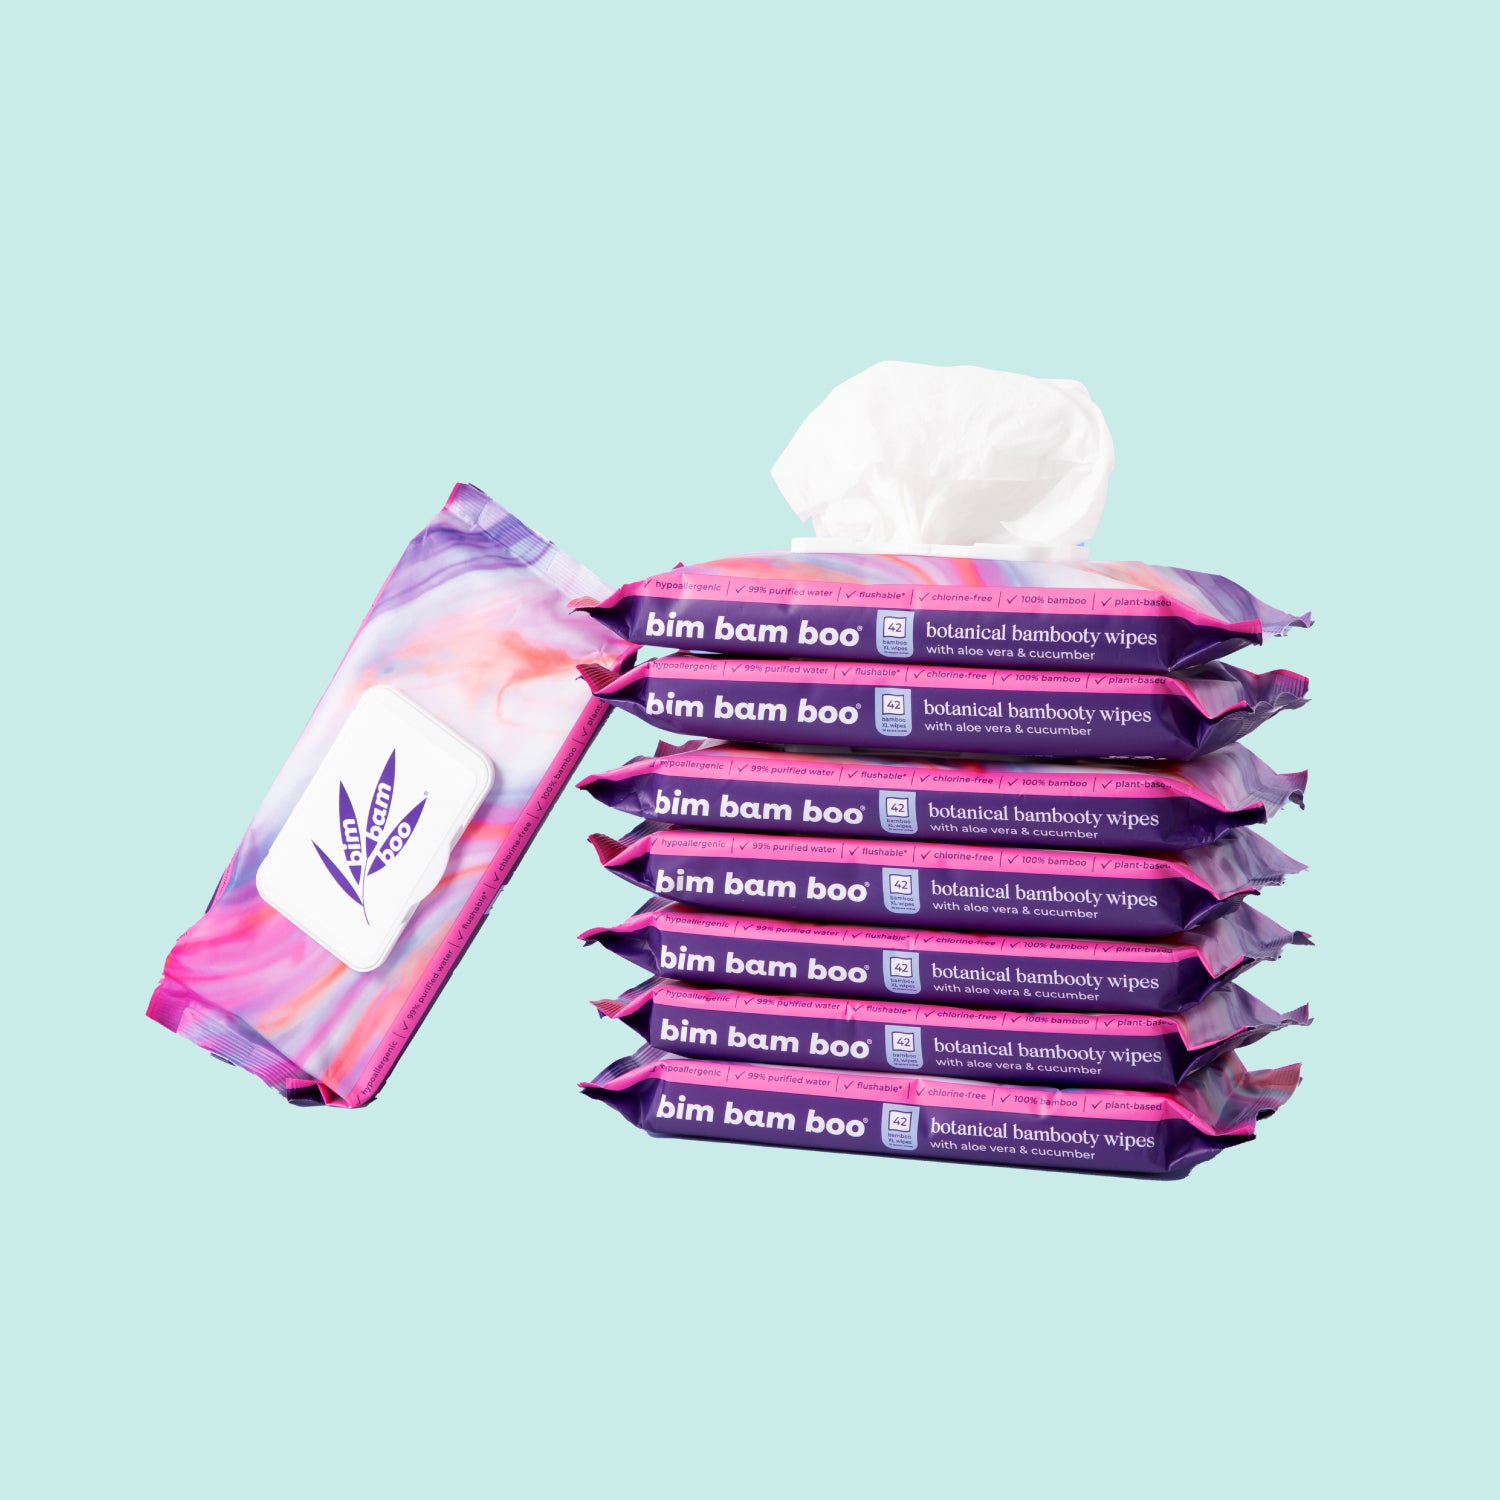 Wet Strength Tissue Paper - Pack of 25